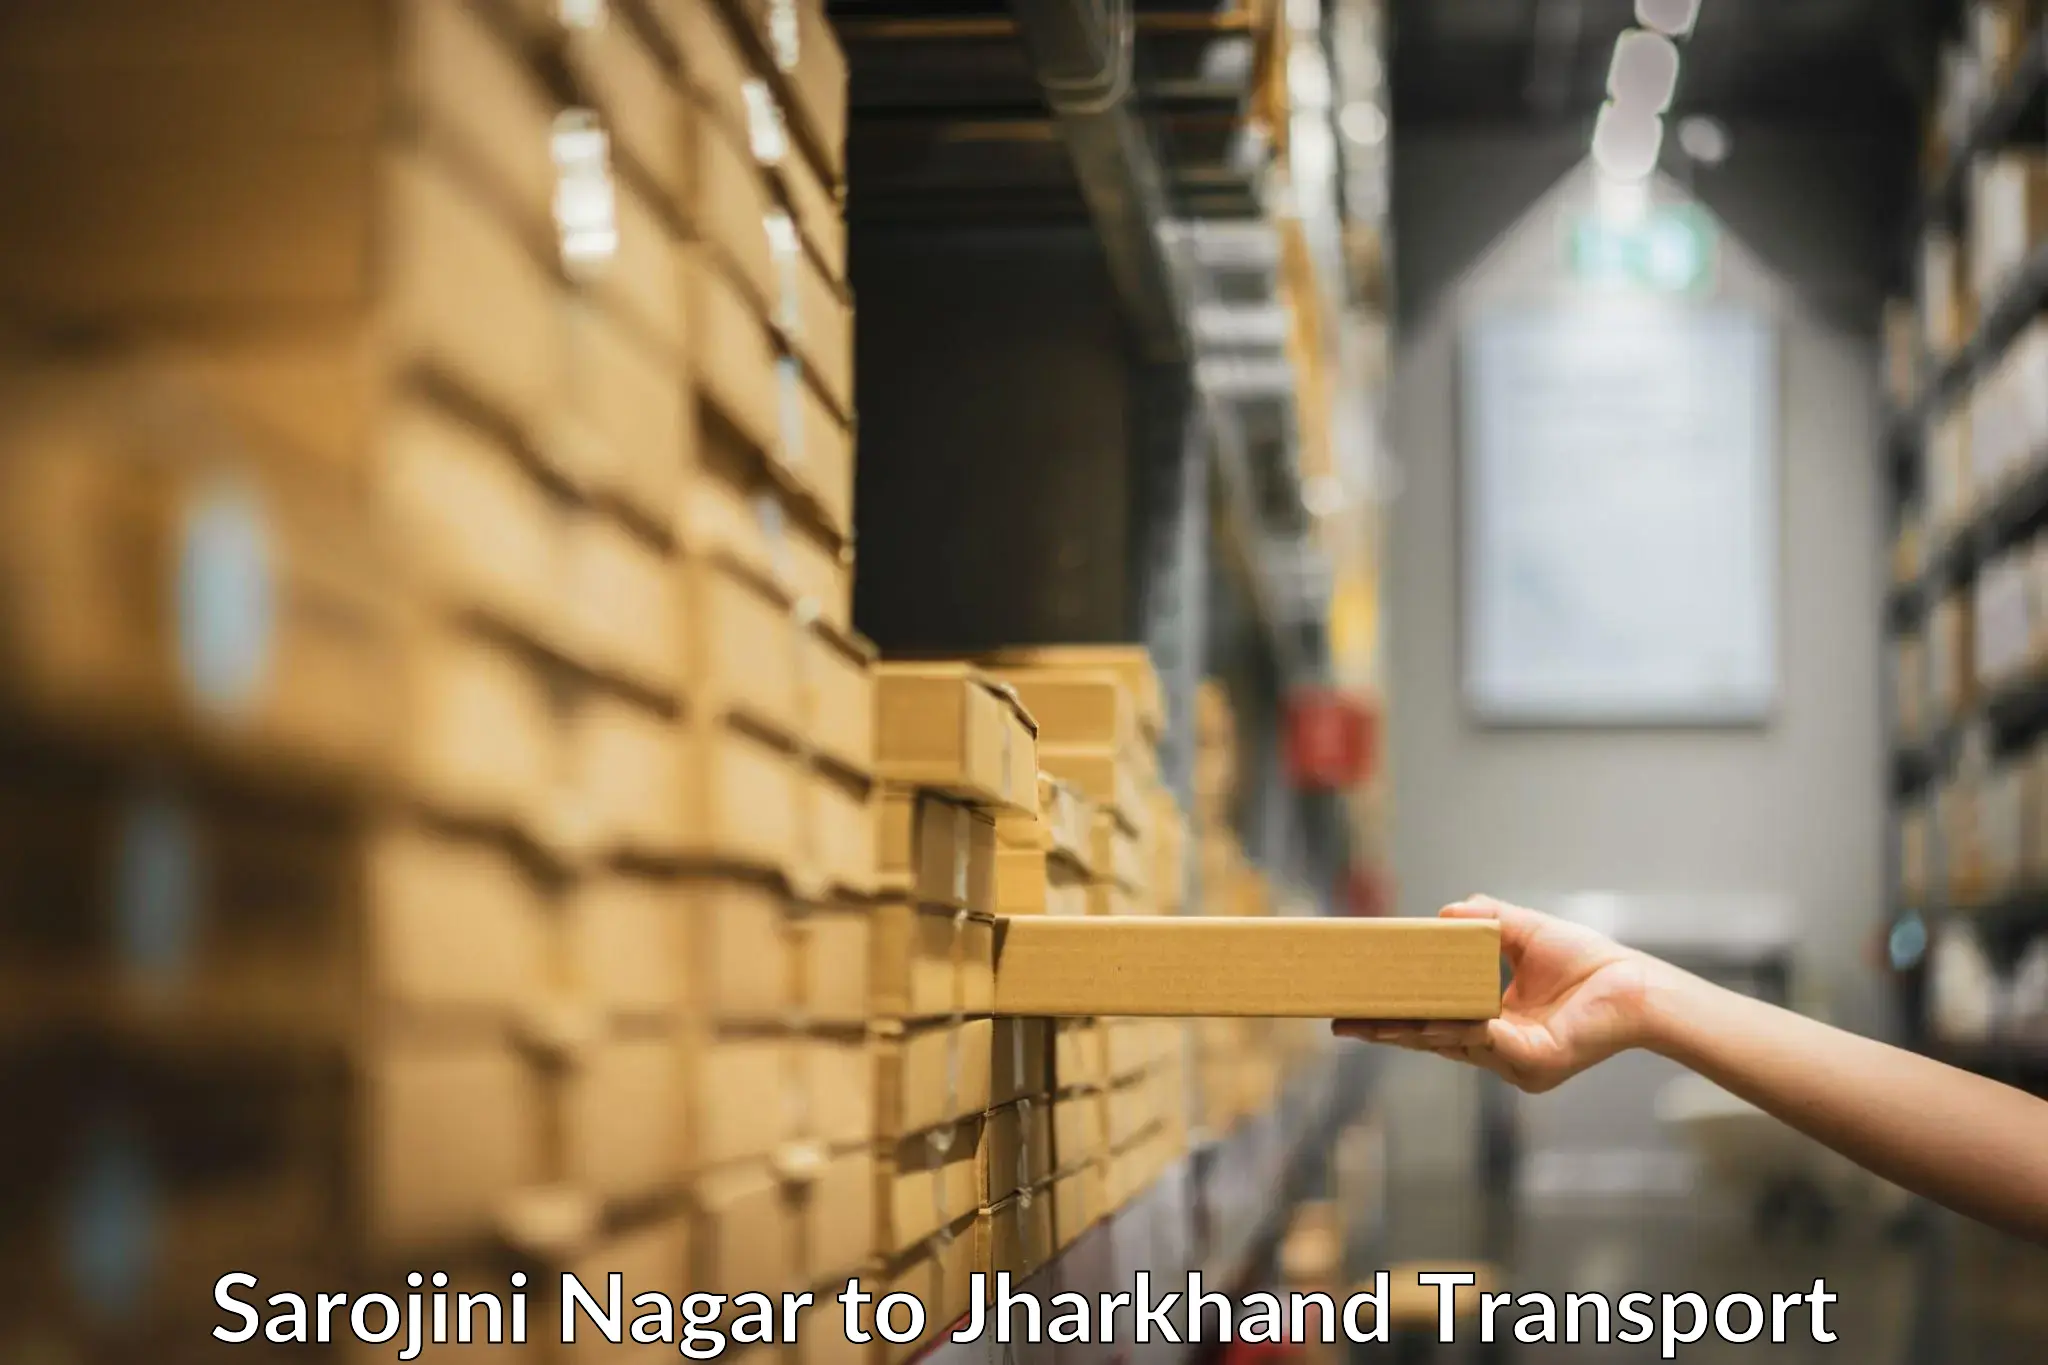 Furniture transport service Sarojini Nagar to Rajmahal